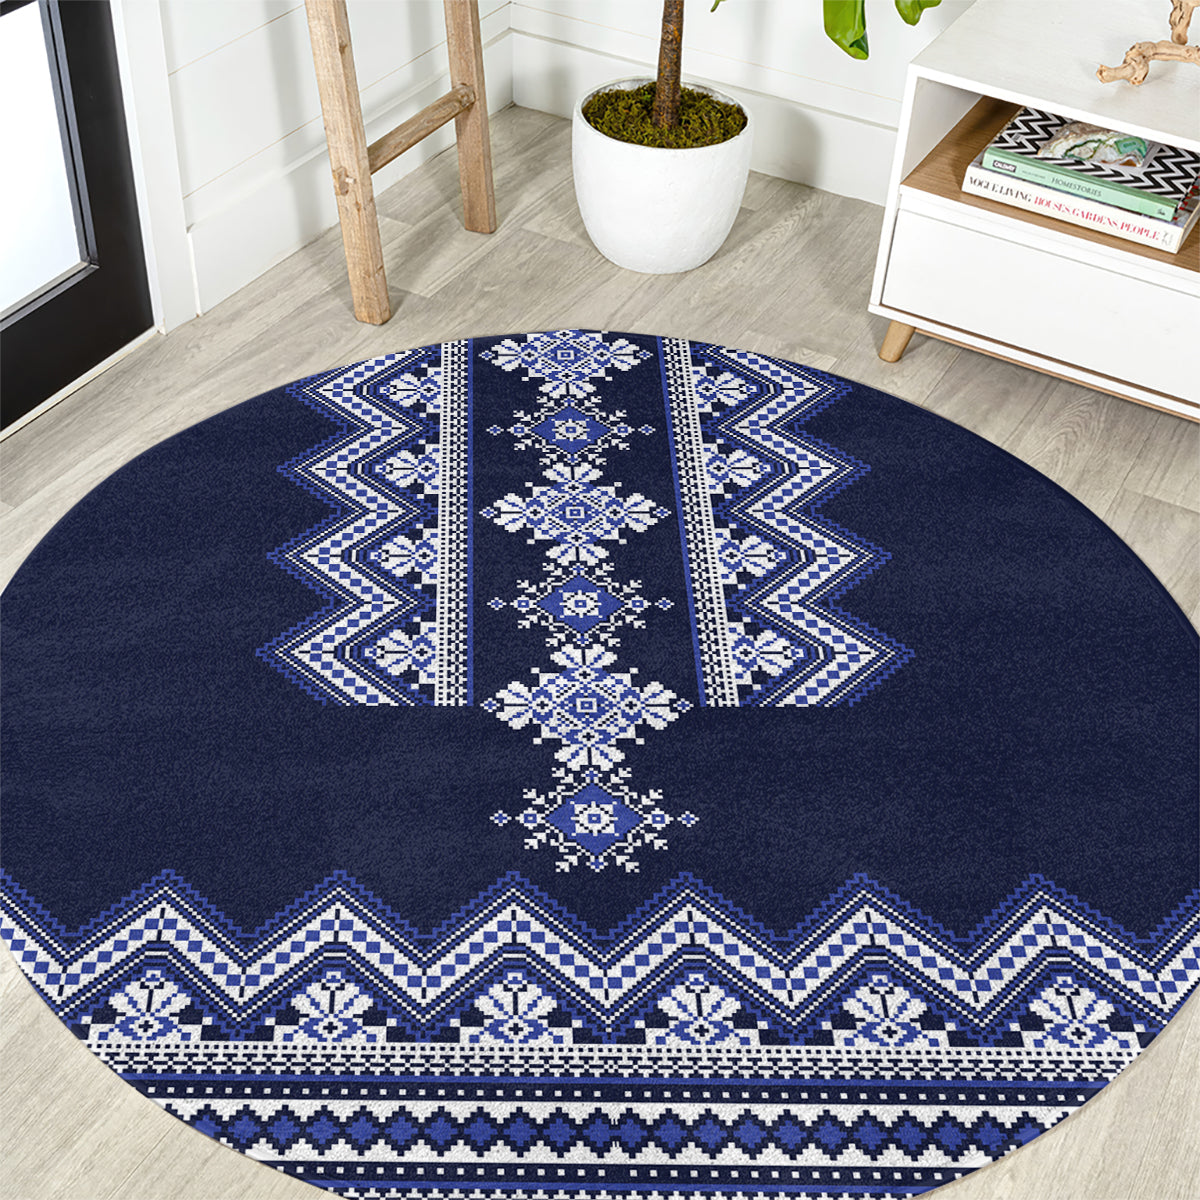 ukraine-folk-pattern-round-carpet-ukrainian-navy-blue-version